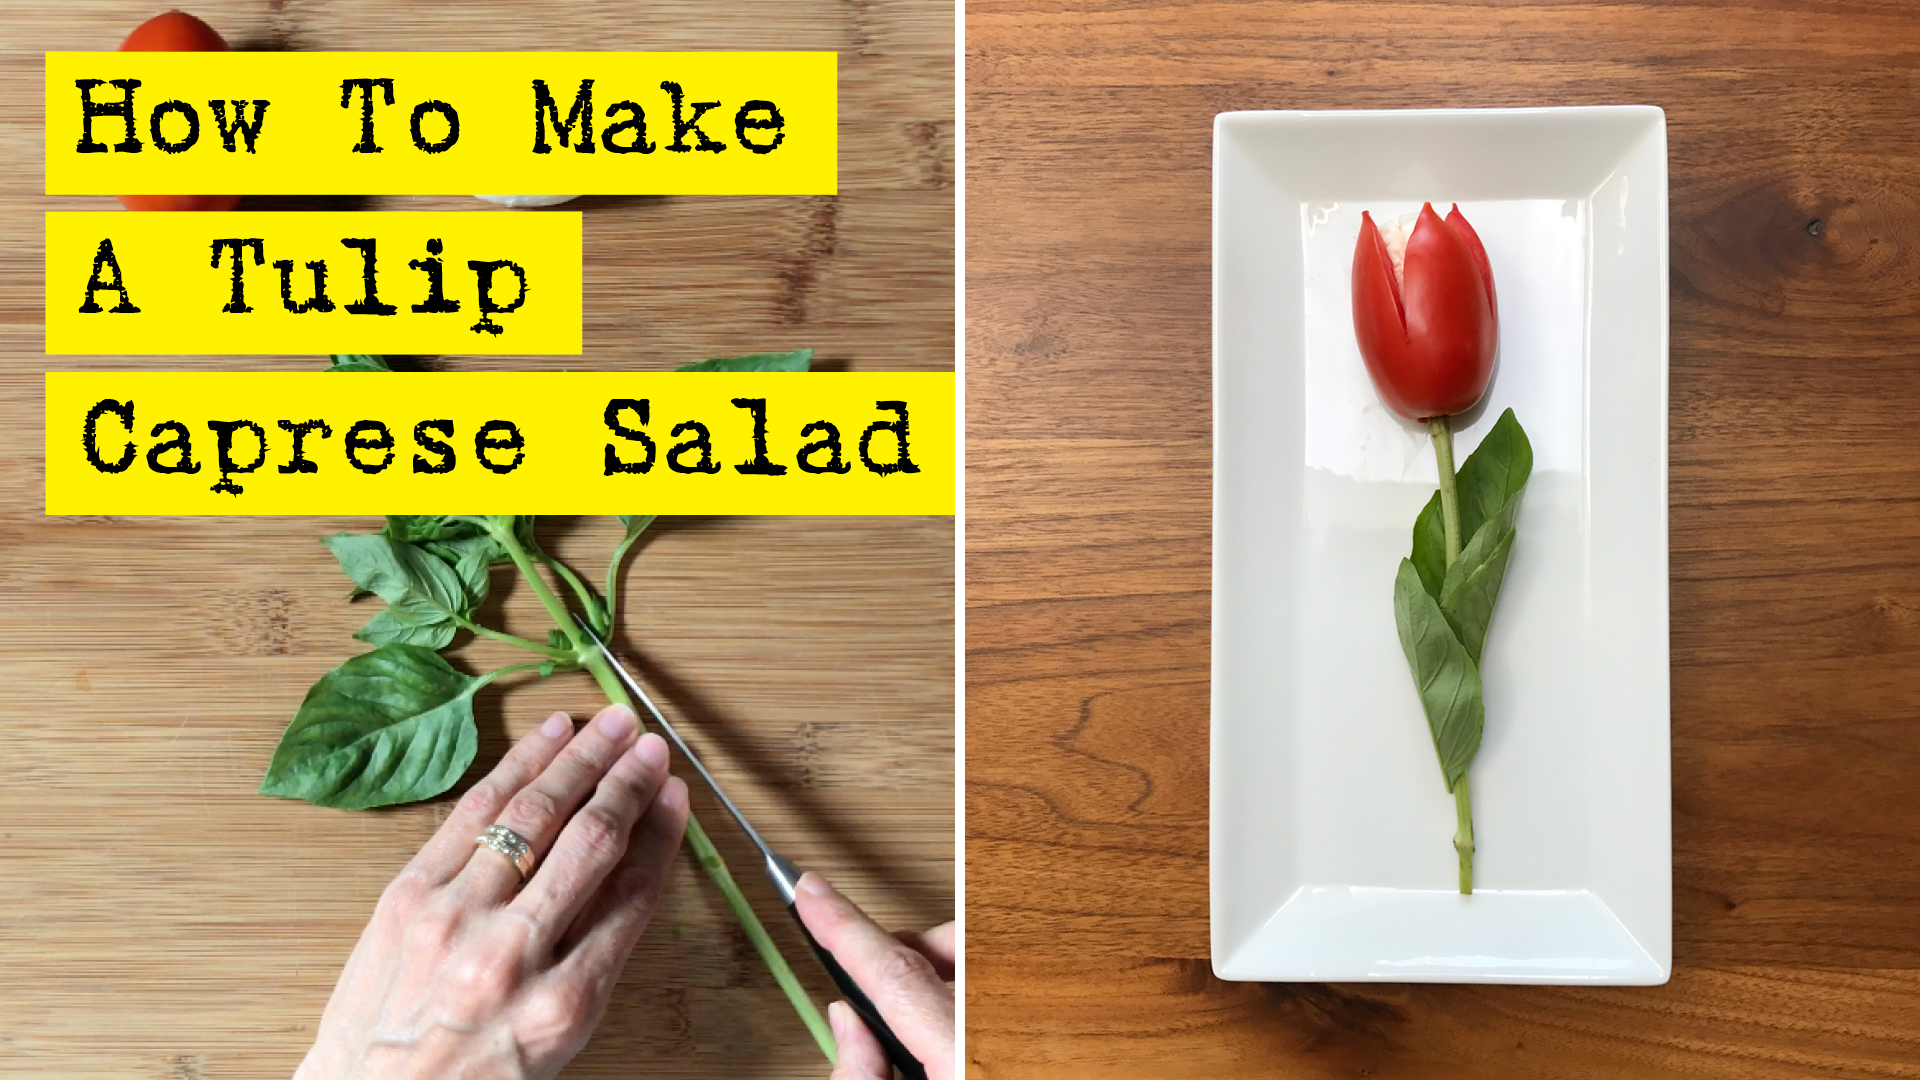 How To Make A Tulip Caprese Salad by DIY Presto!